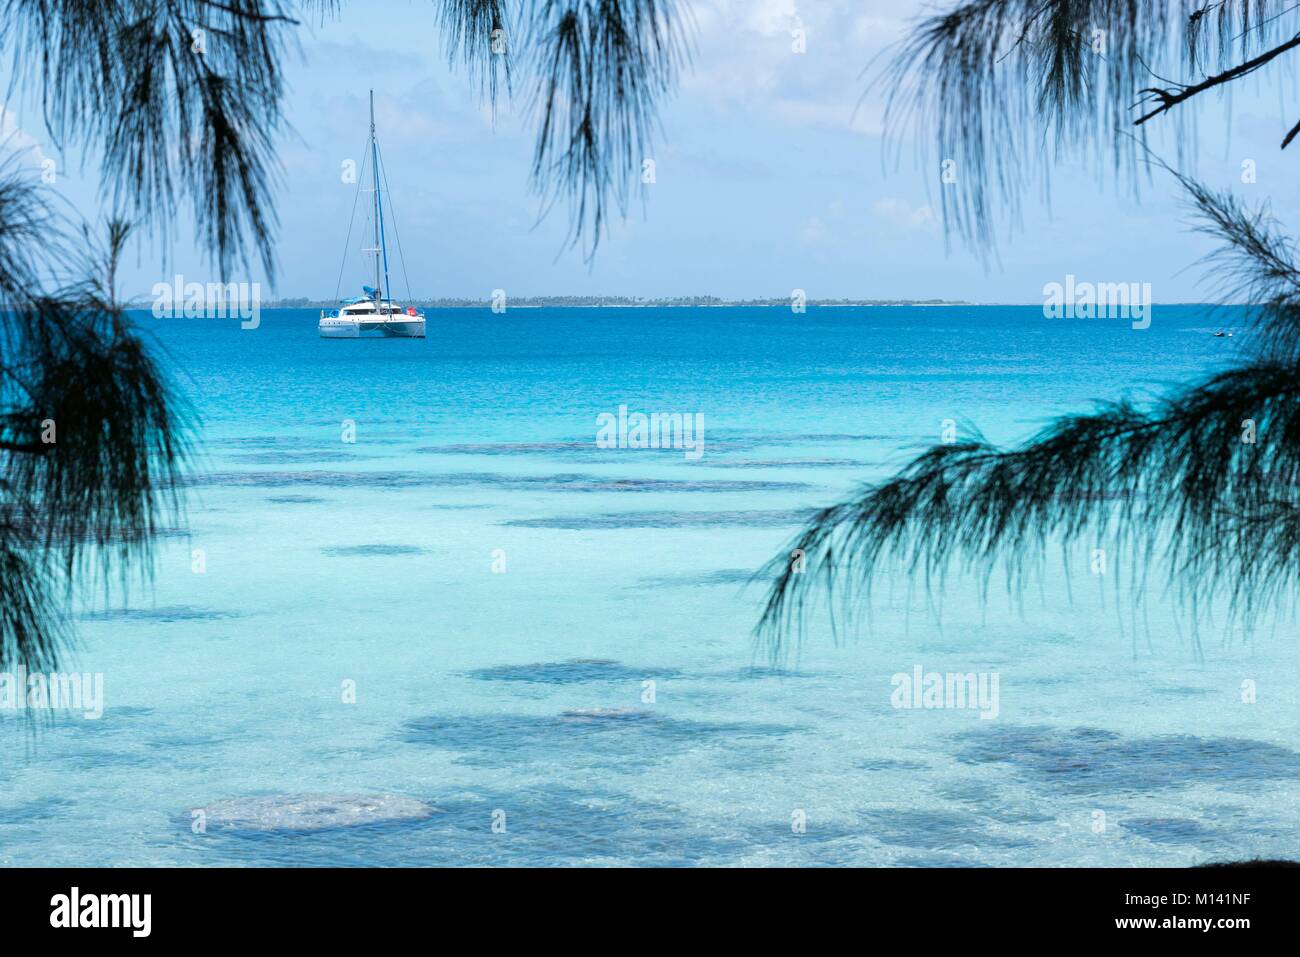 La France, la Polynésie française, archipel des Tuamotu, l'atoll de Fakarava, Rotoava, Réserve de biosphère de l'UNESCO, catamaran ancré dans le lagon Banque D'Images